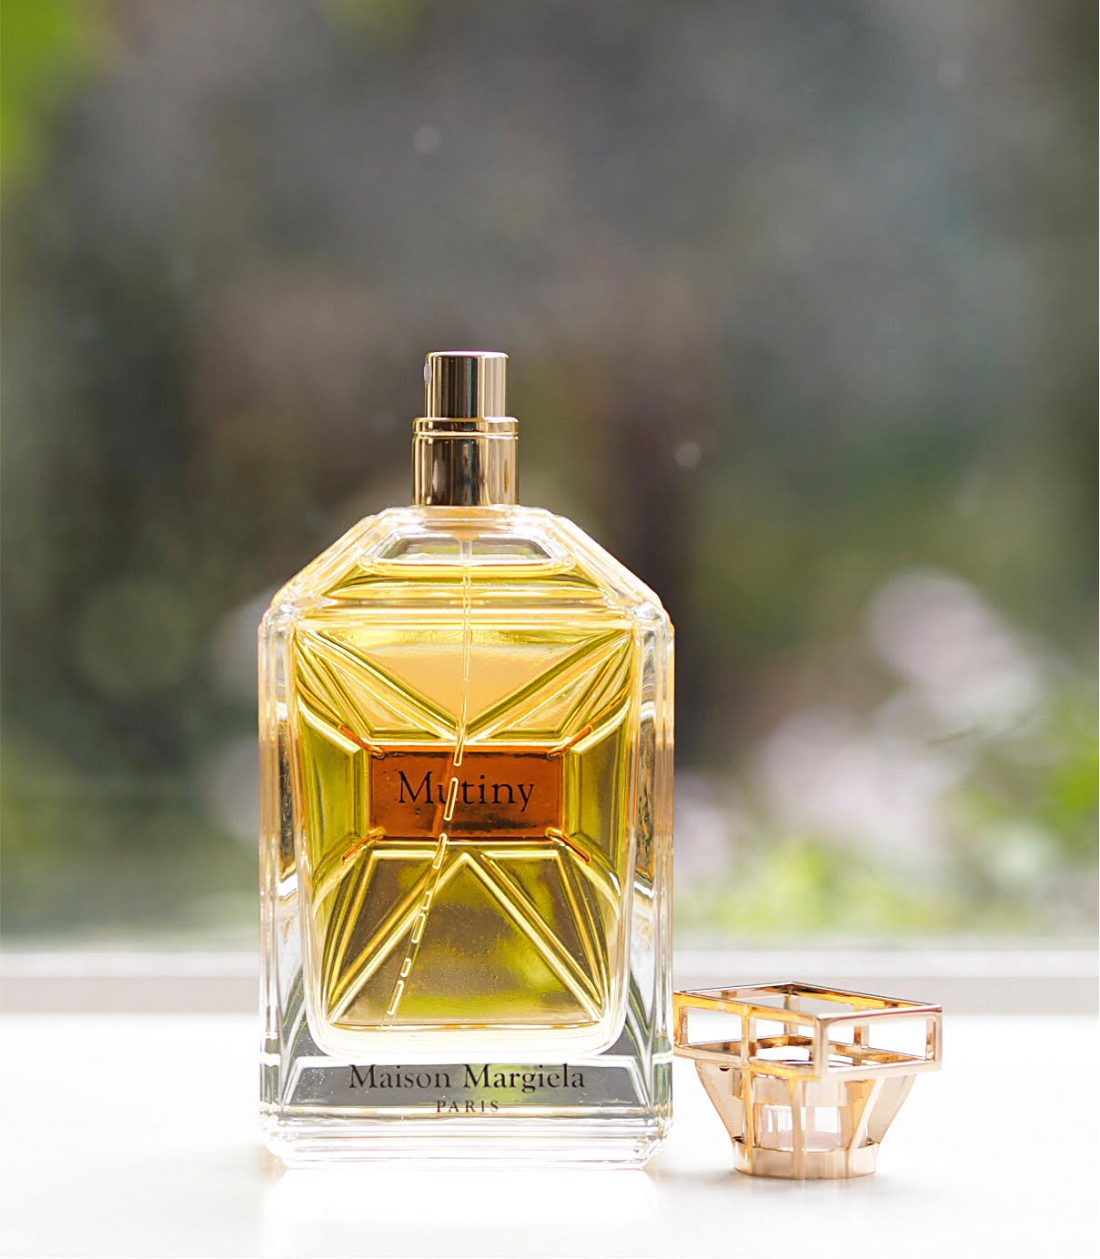 Maison Margiela Mutiny Fragrance | British Beauty Blogger